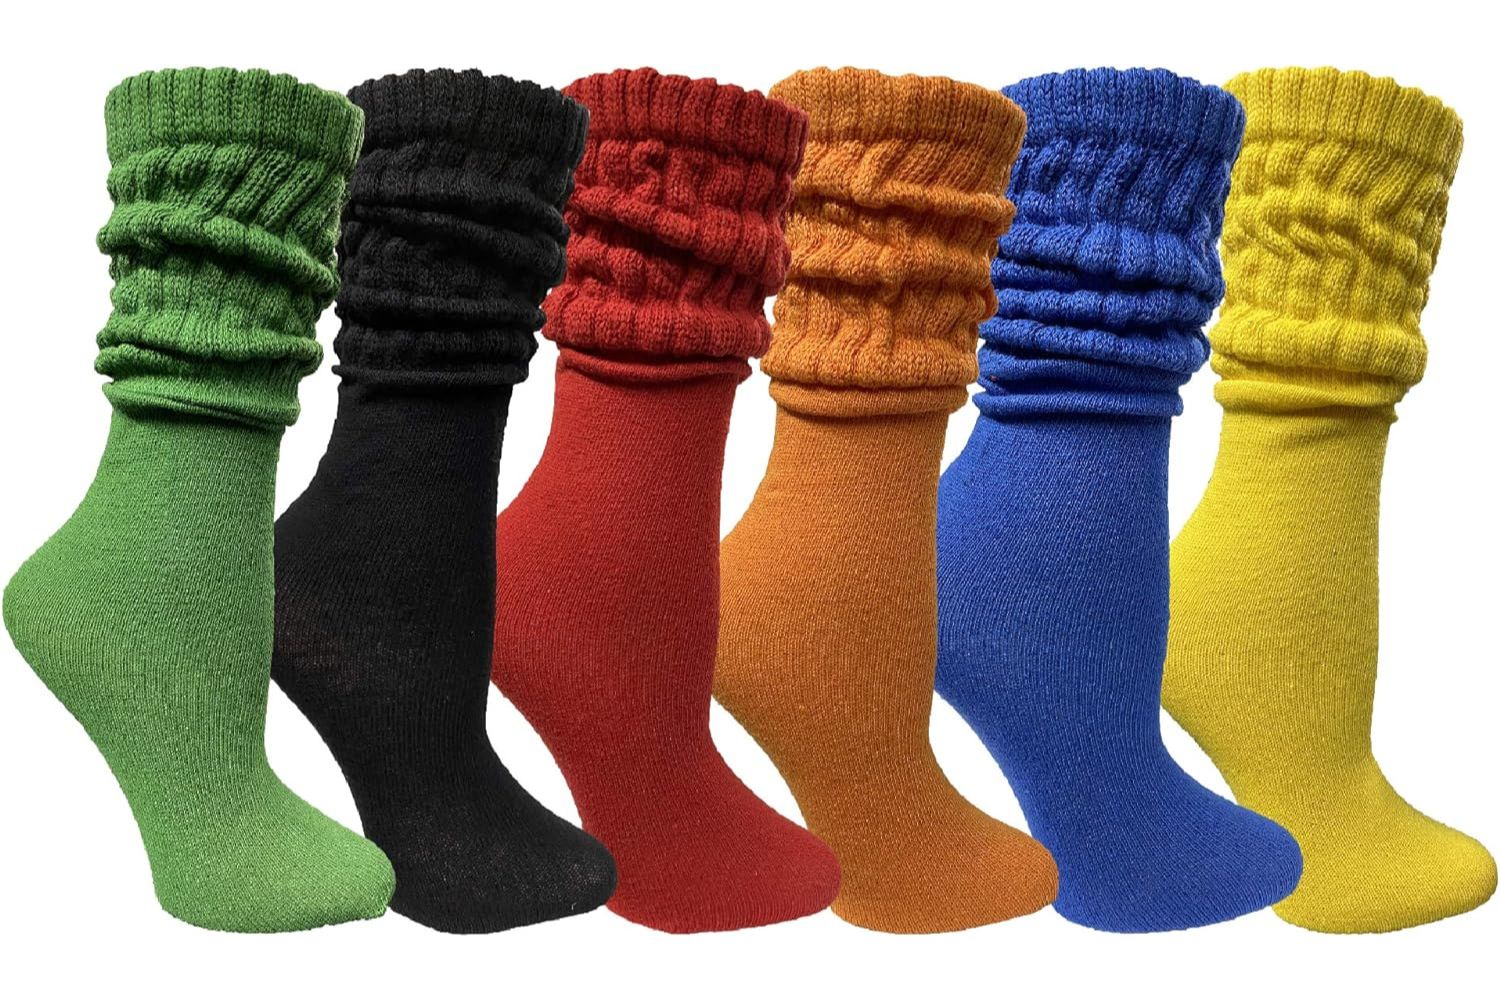 6 Best Ski Socks 